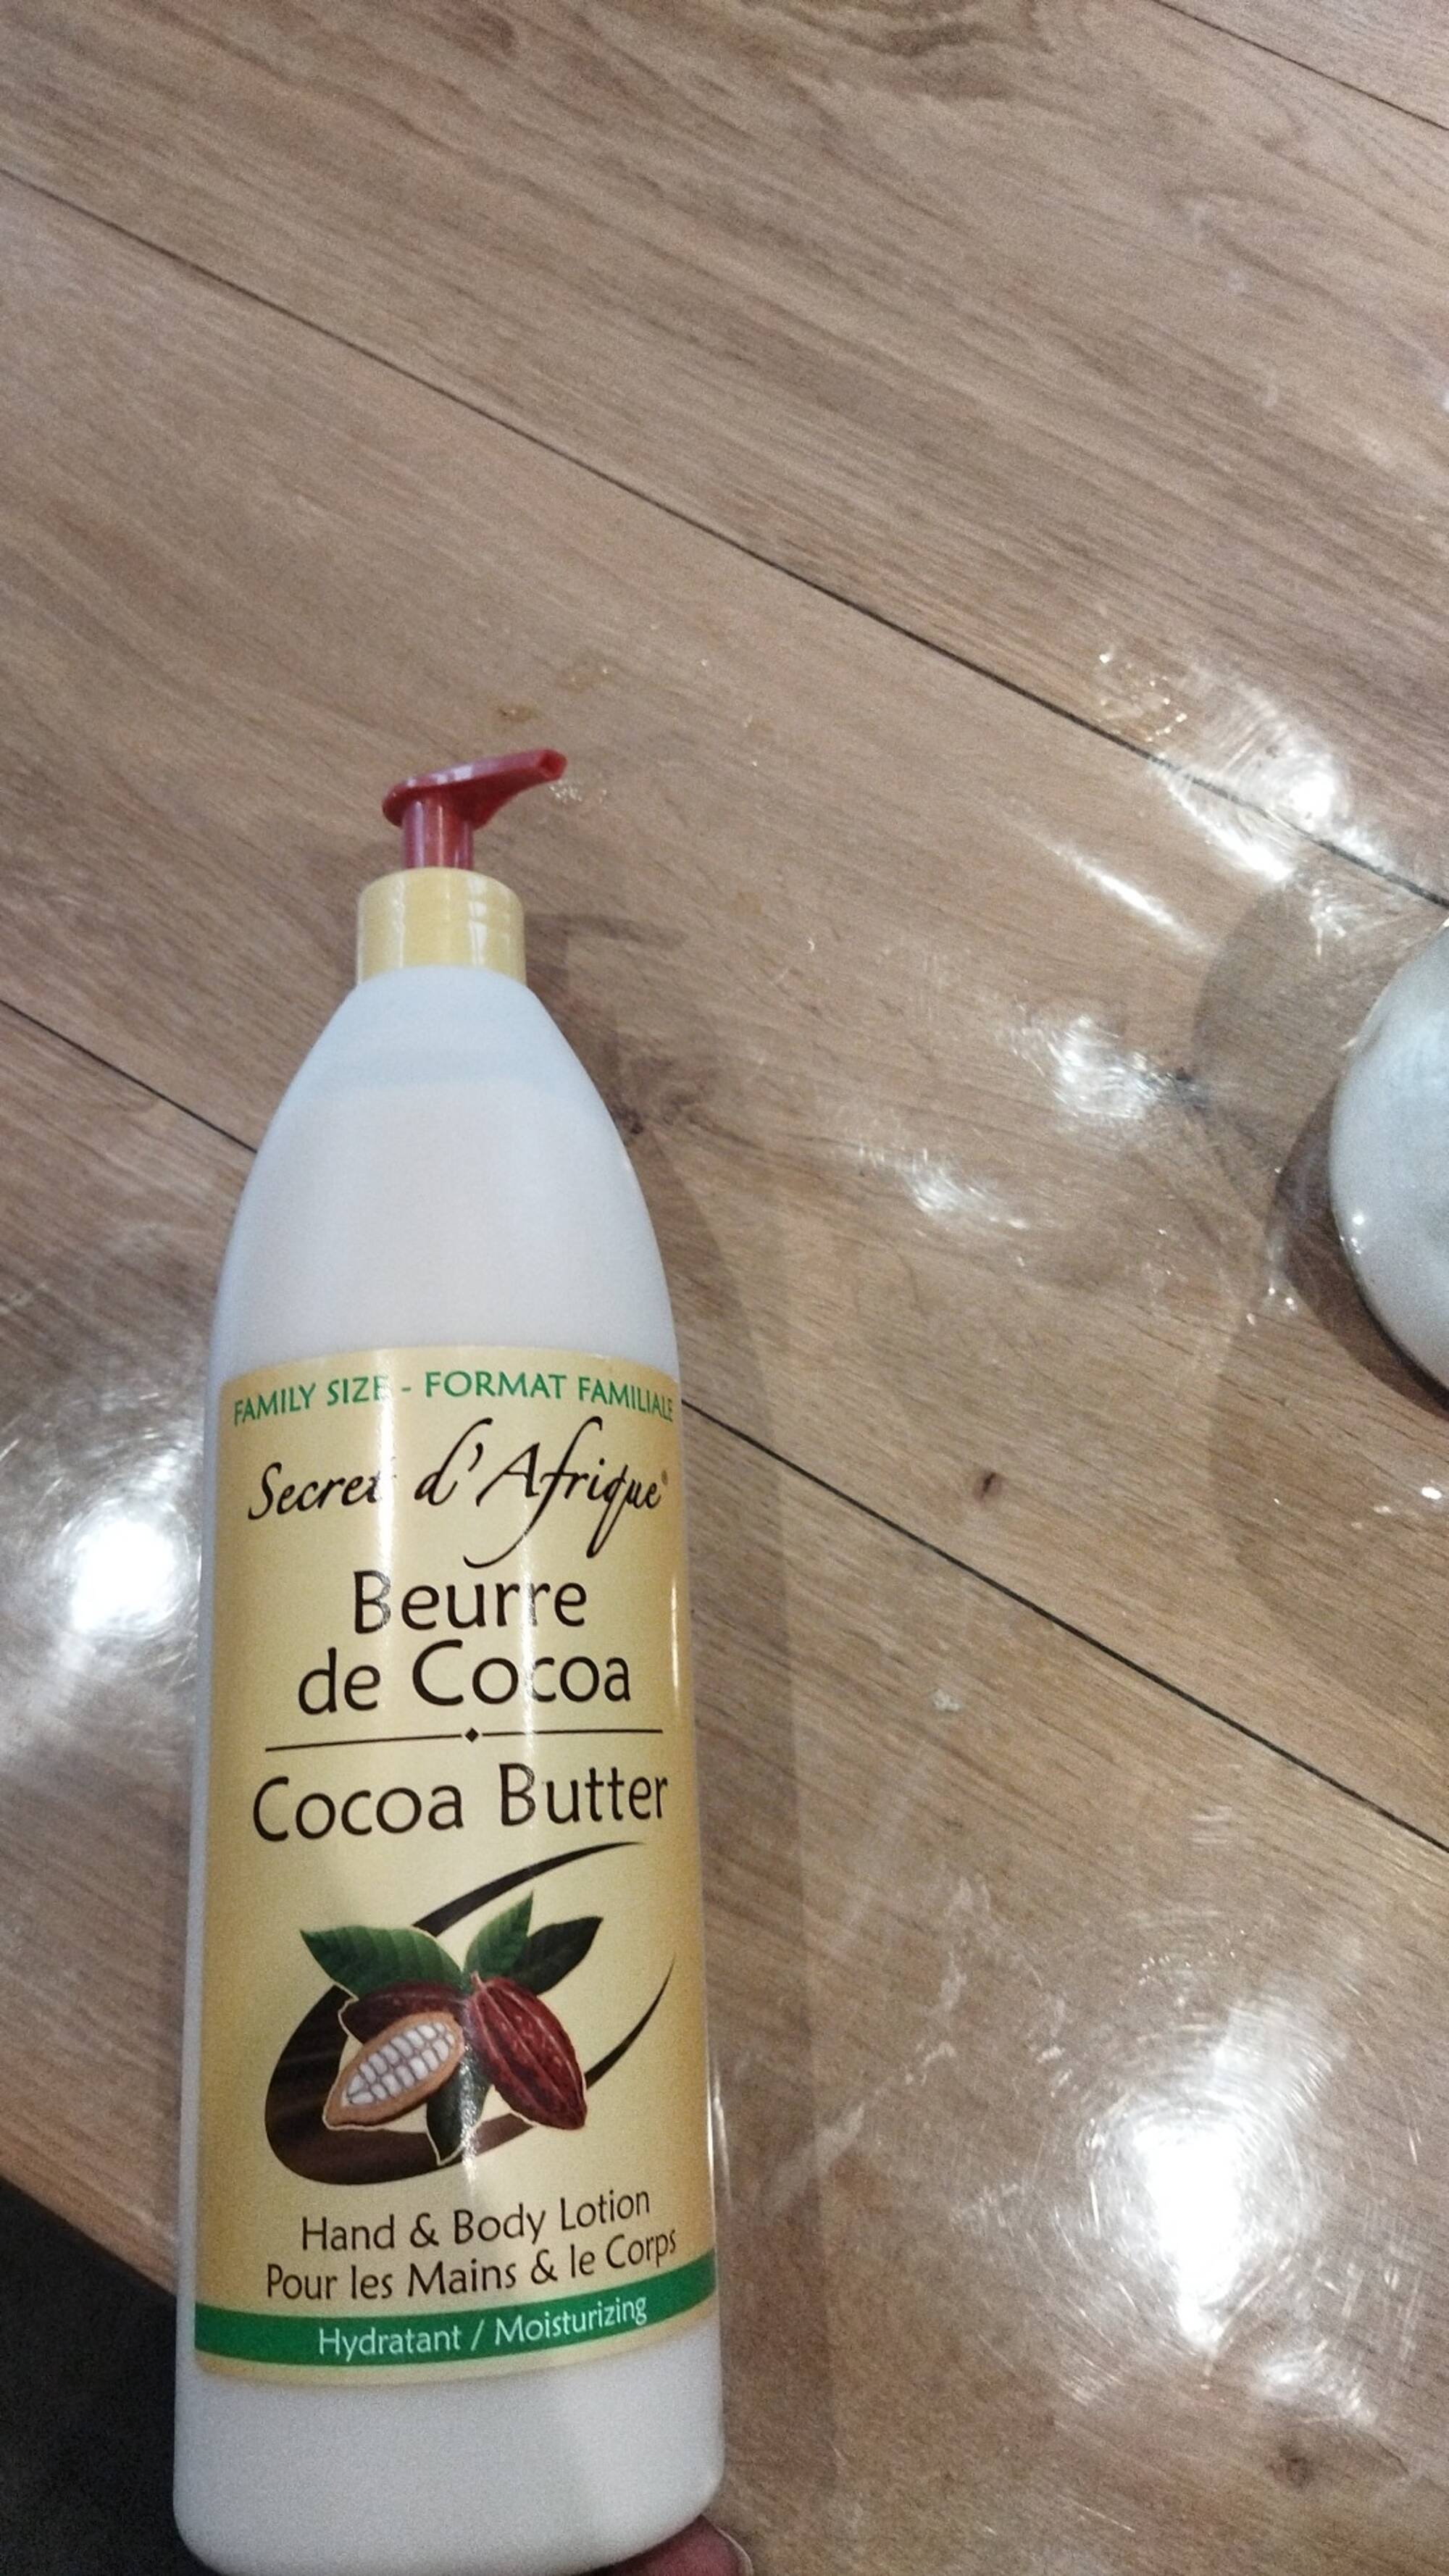 SECRET D'AFRIQUE - Beurre de cocoa